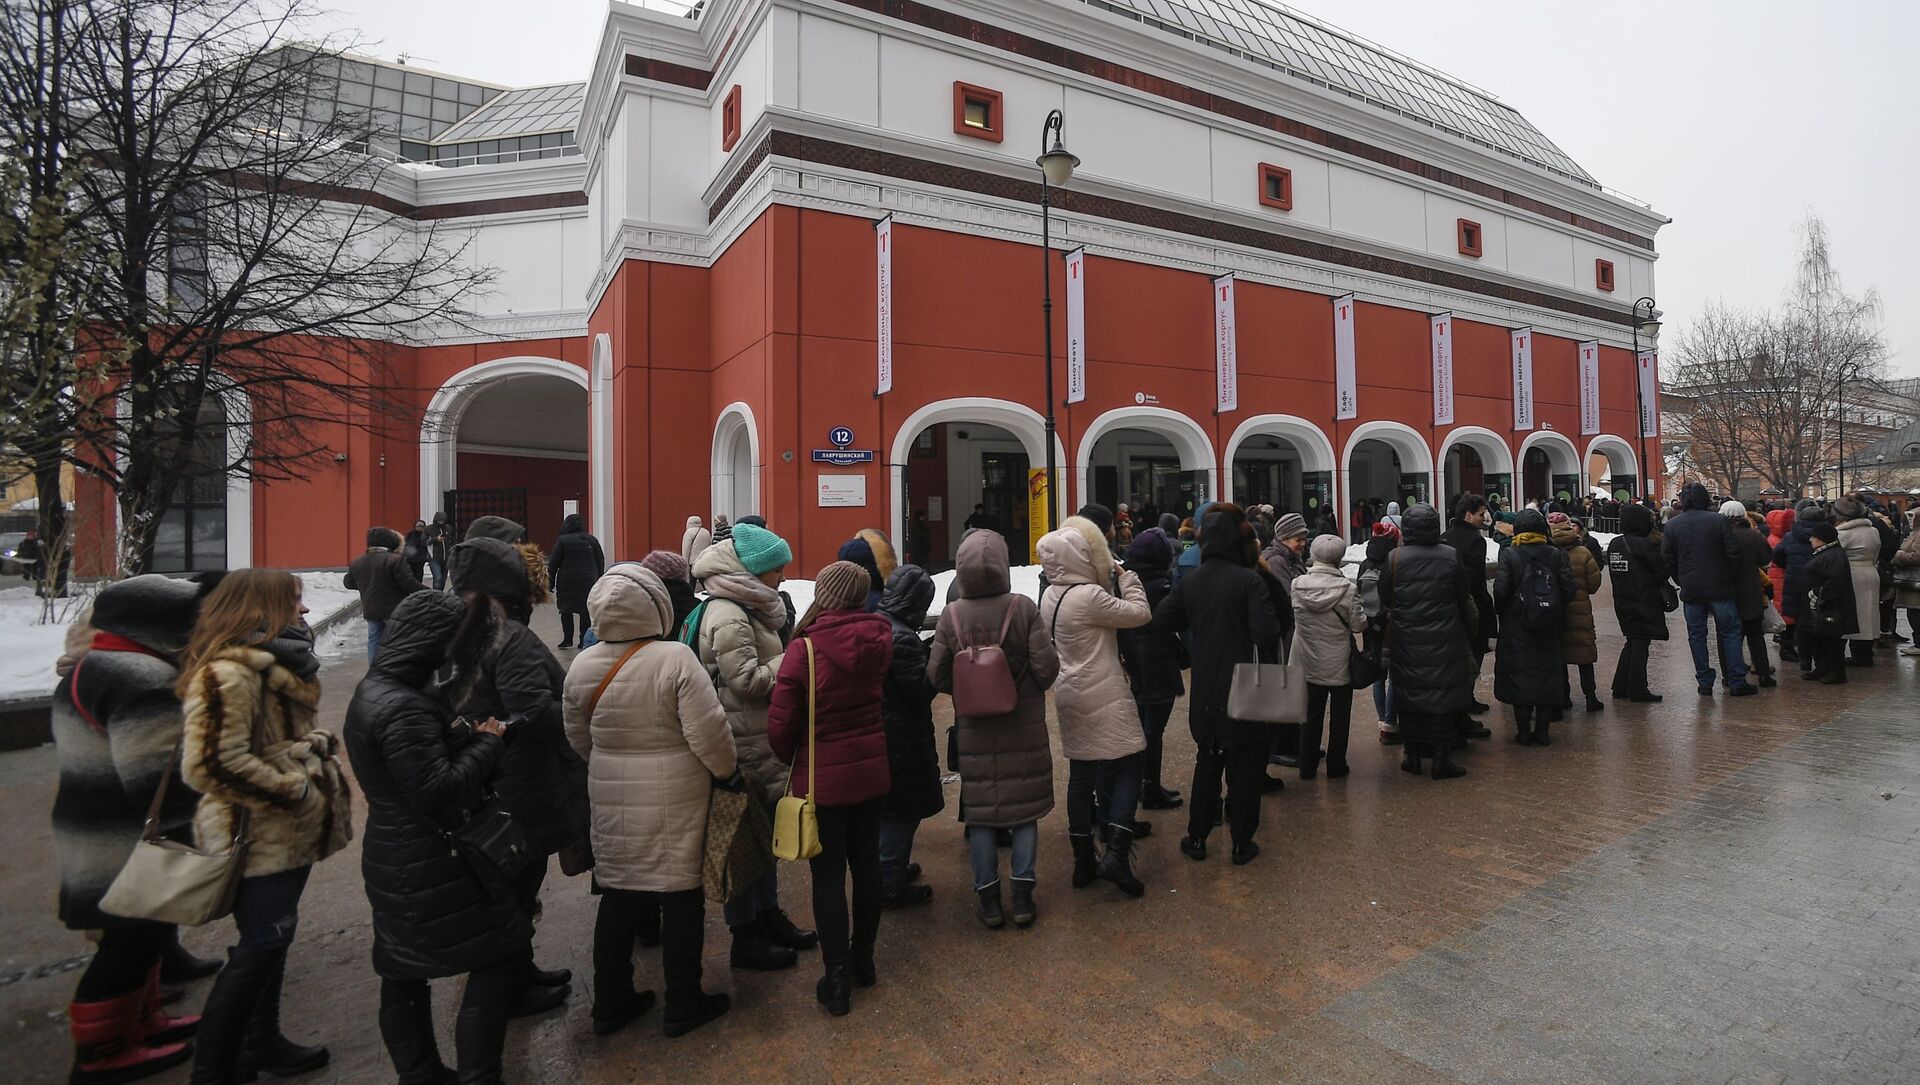 「雪も雨も彼らには関係ない」:中国人、長時間列に並ぶロシア人にびっくり - Sputnik 日本, 1920, 30.08.2021